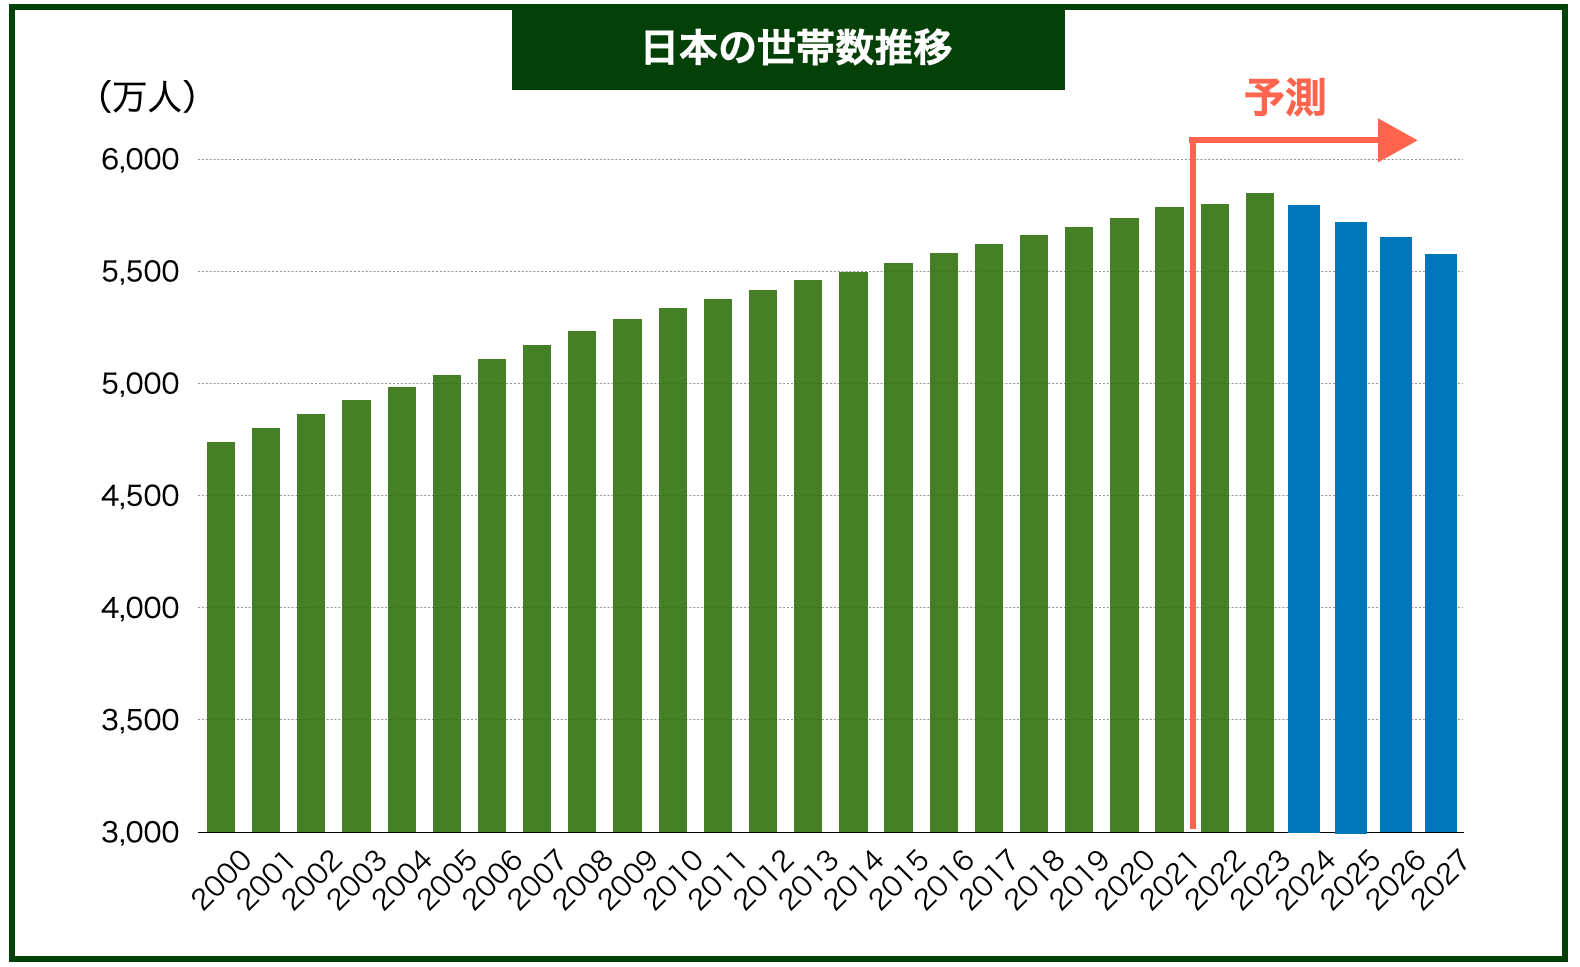 日本の世帯数